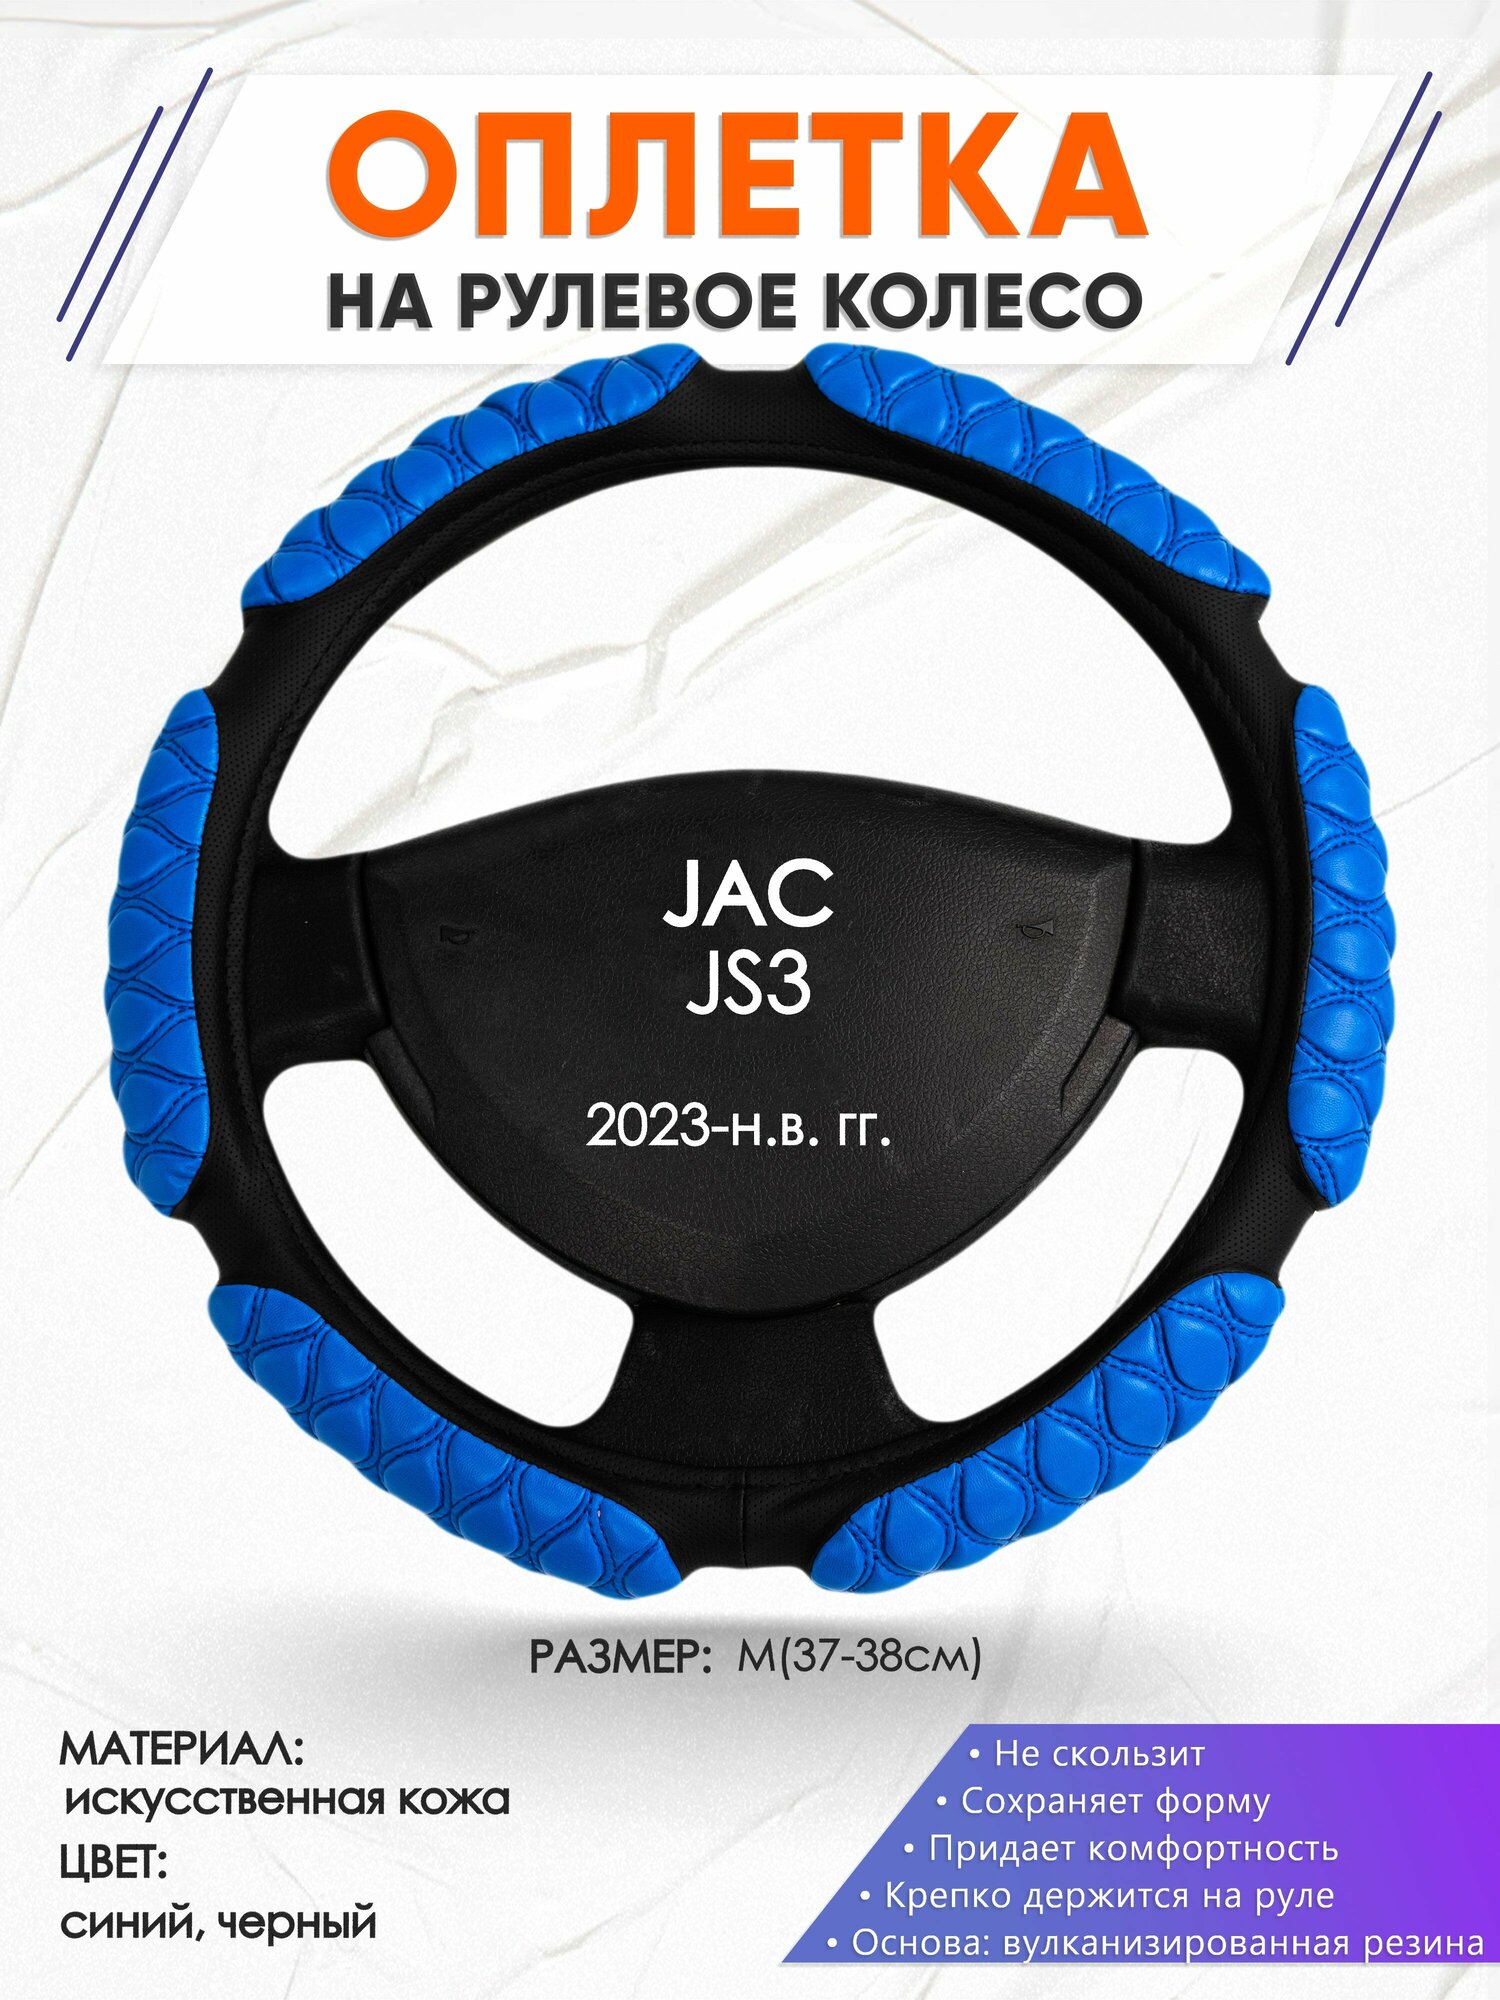 Оплетка наруль для JAC JS3(Джак Джи С 3) 2023-н. в. годов выпуска, размер M(37-38см), Искусственная кожа 02